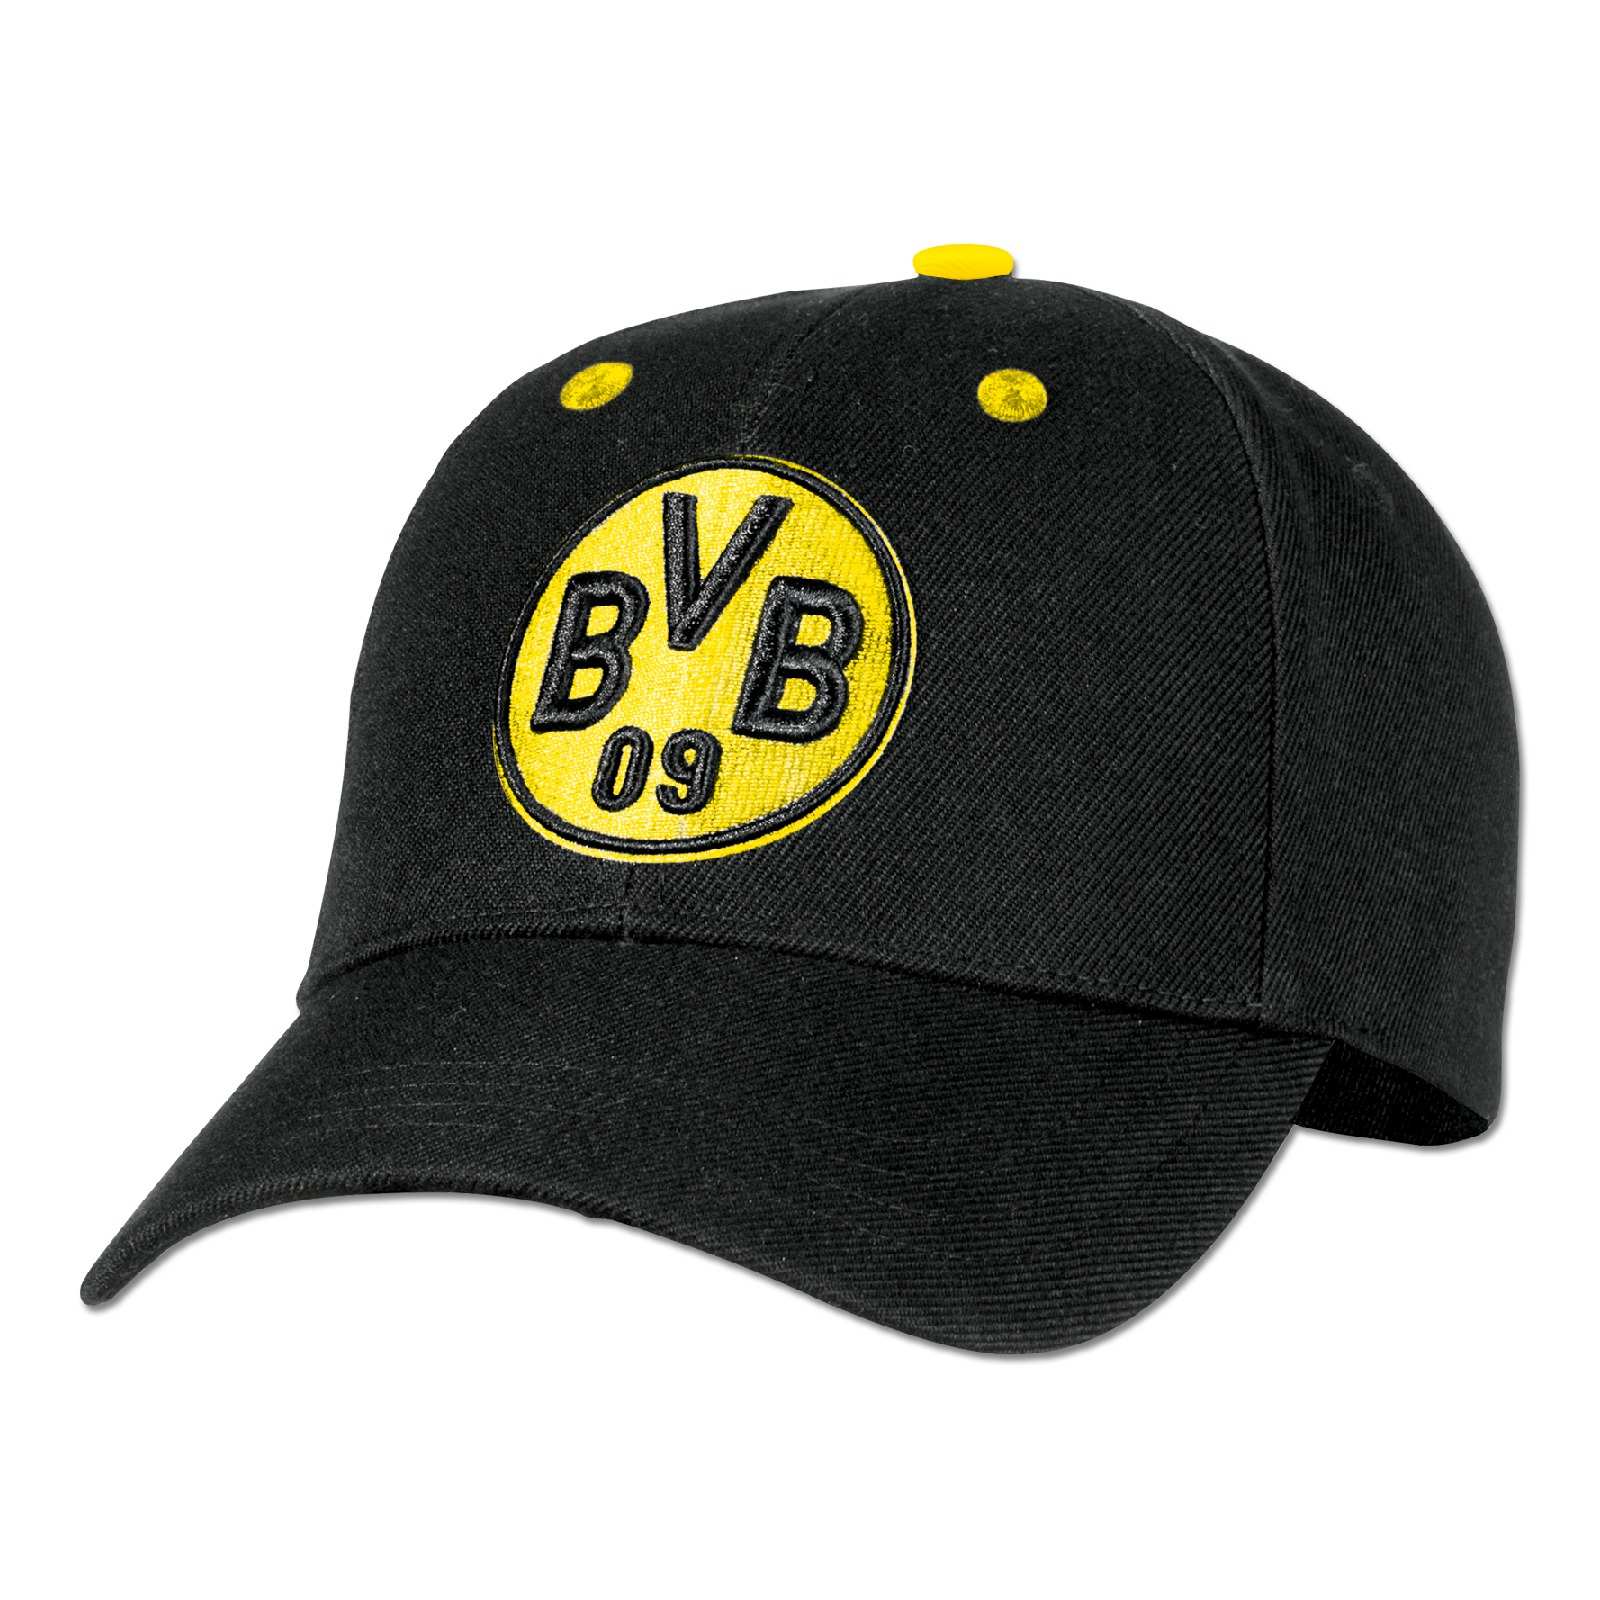 Wendemütze ** Schwarz Grau Gelb ** 17270301 BVB Borussia Dortmund Mütze 